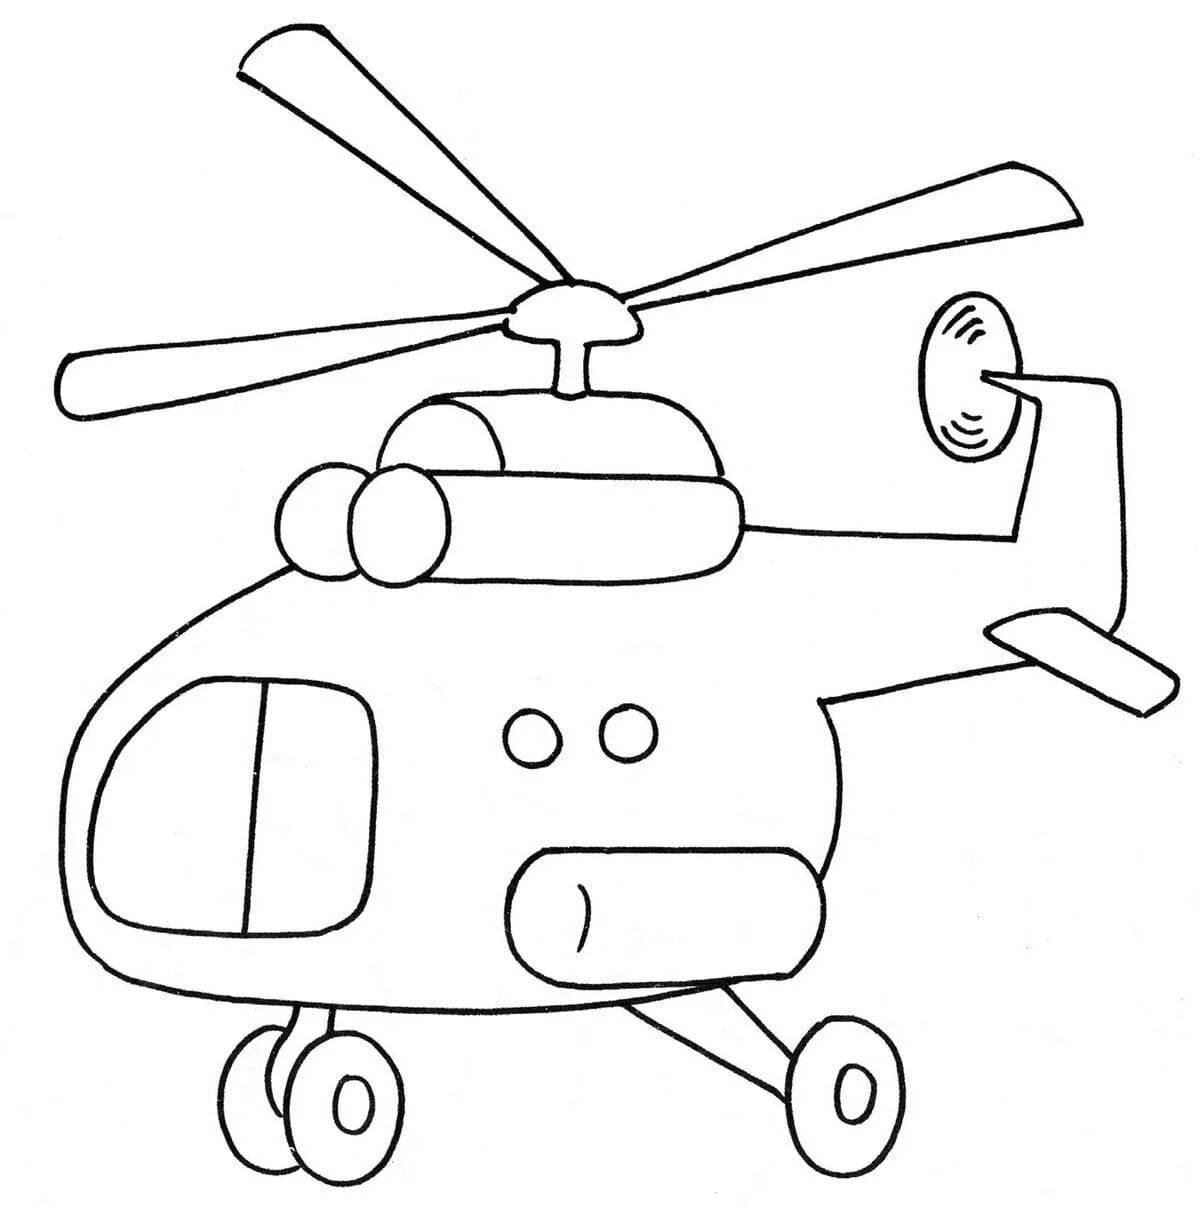 Раскраска фантастический вертолет для детей 7 лет